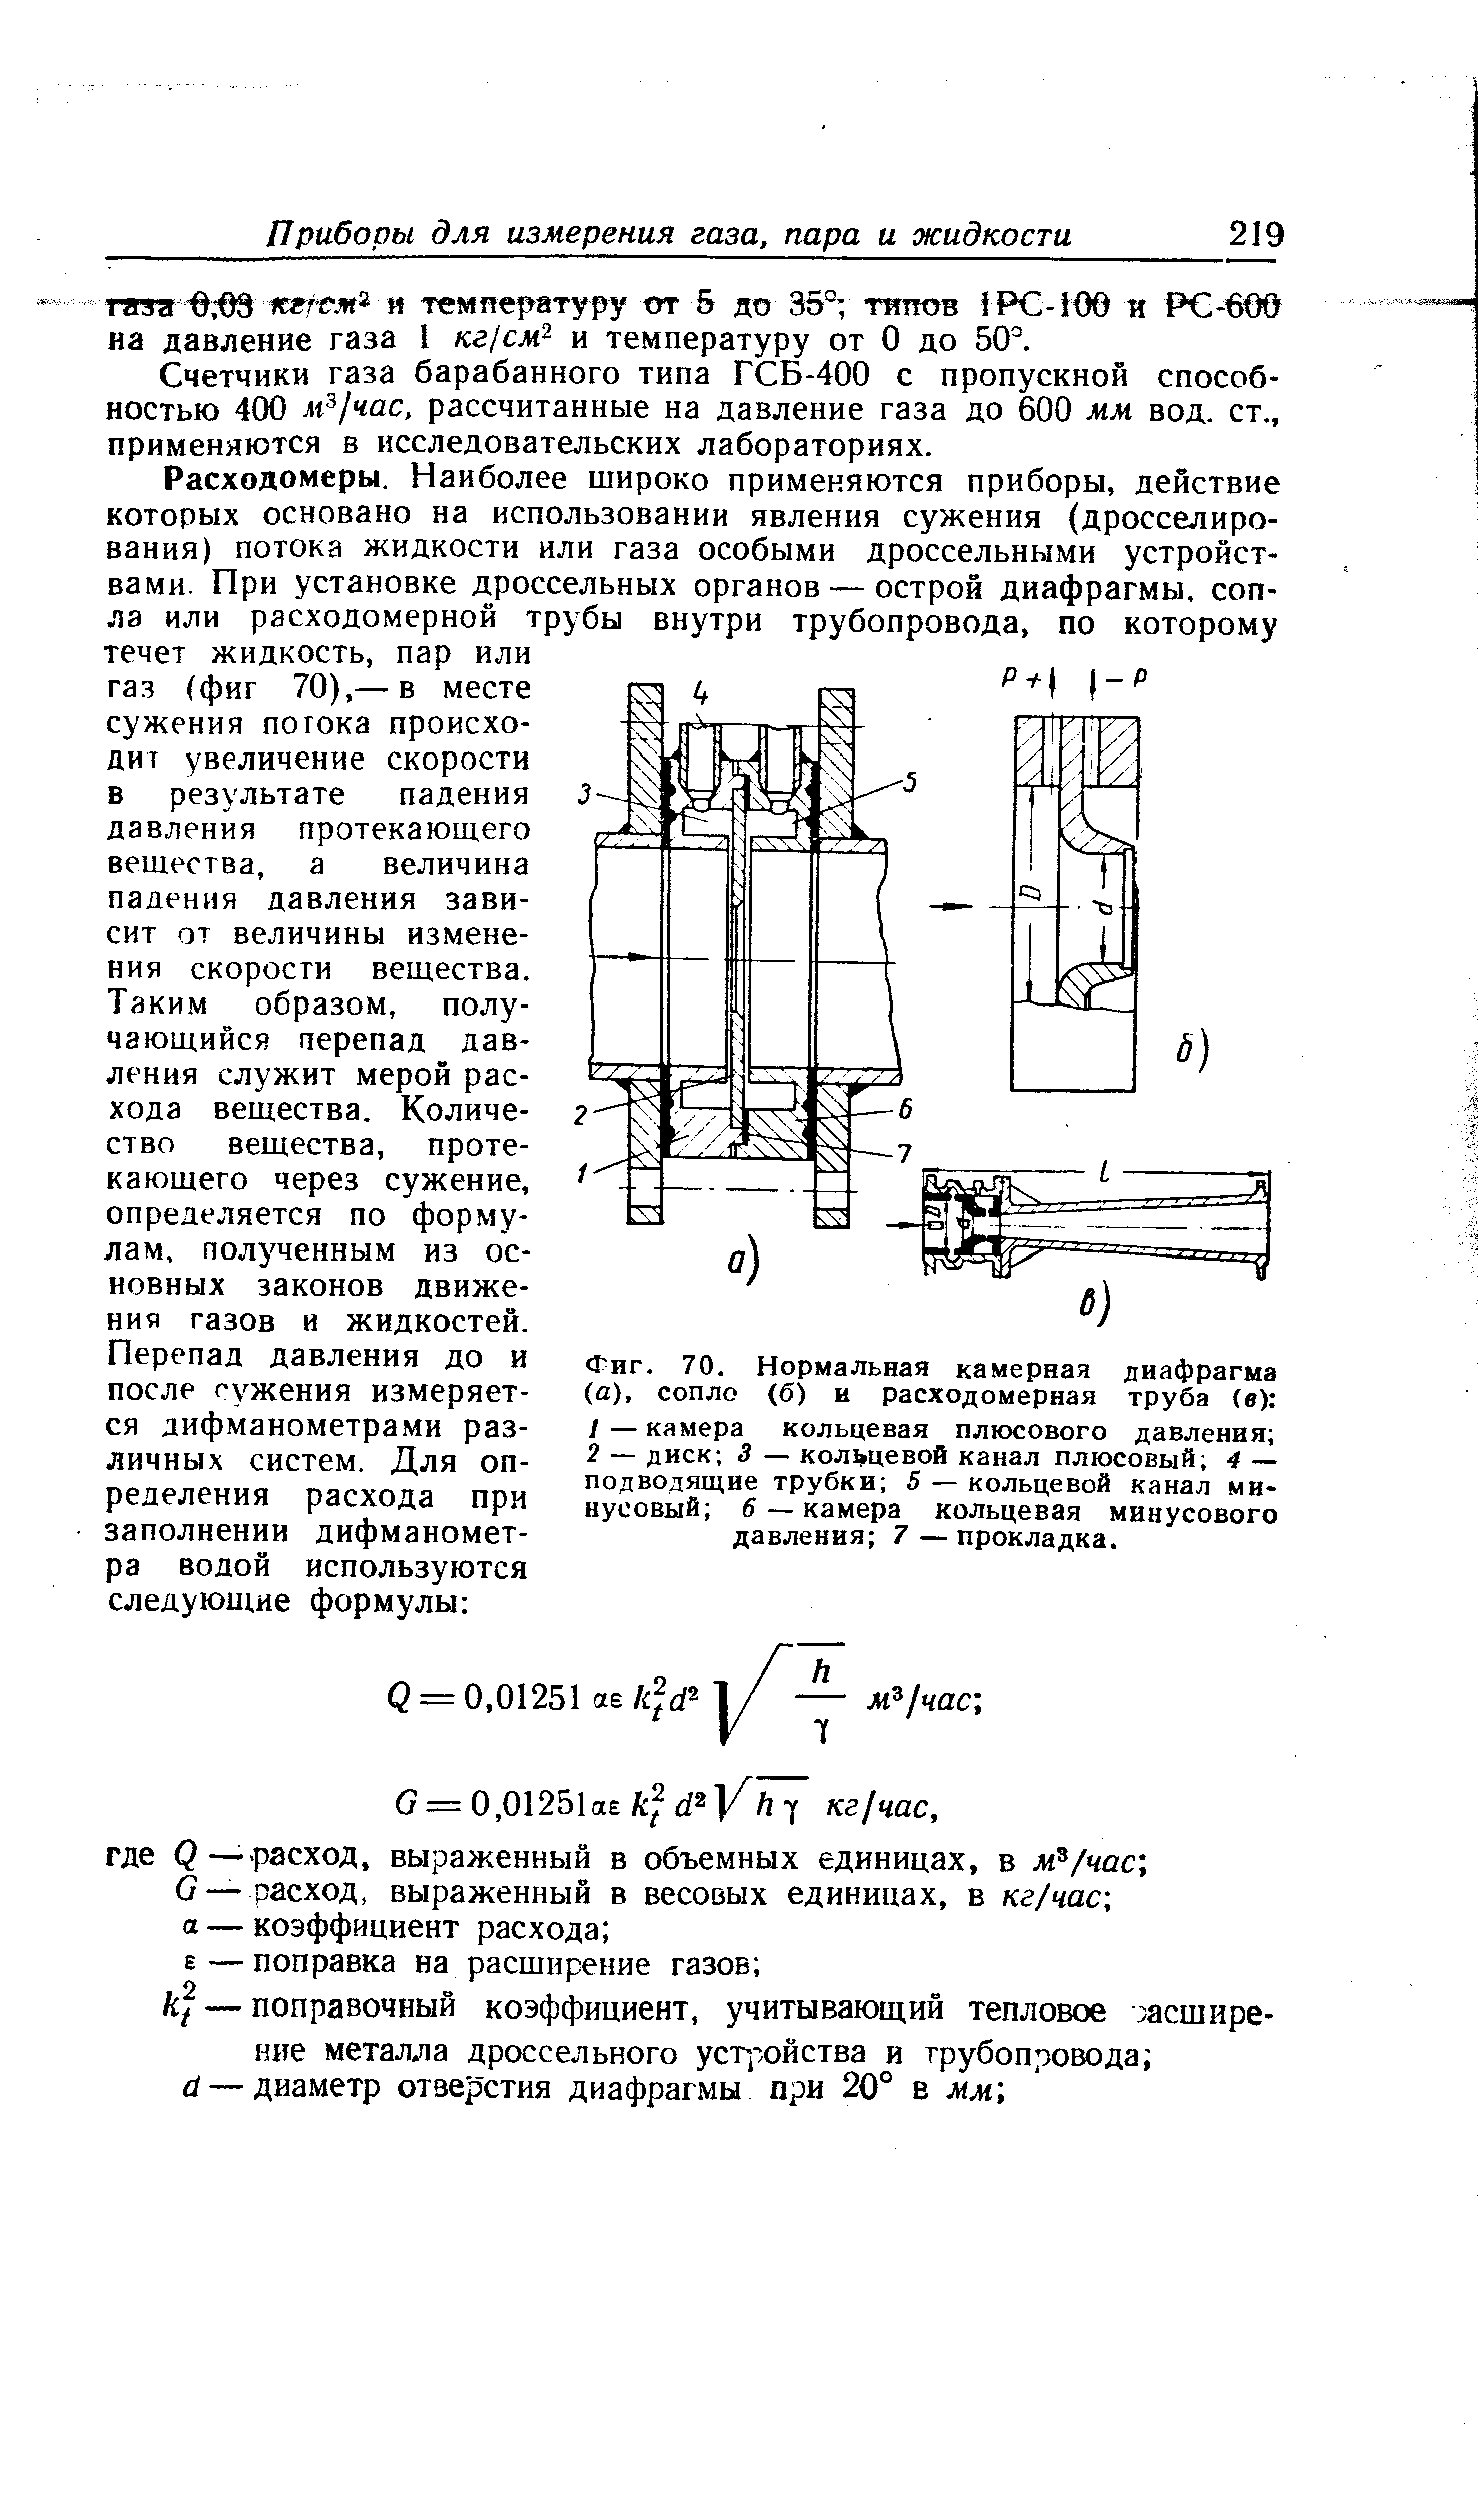 Фиг. 70. Нормальная камерная диафрагма (а), сопло (б) и расходомерная труба (в) 
